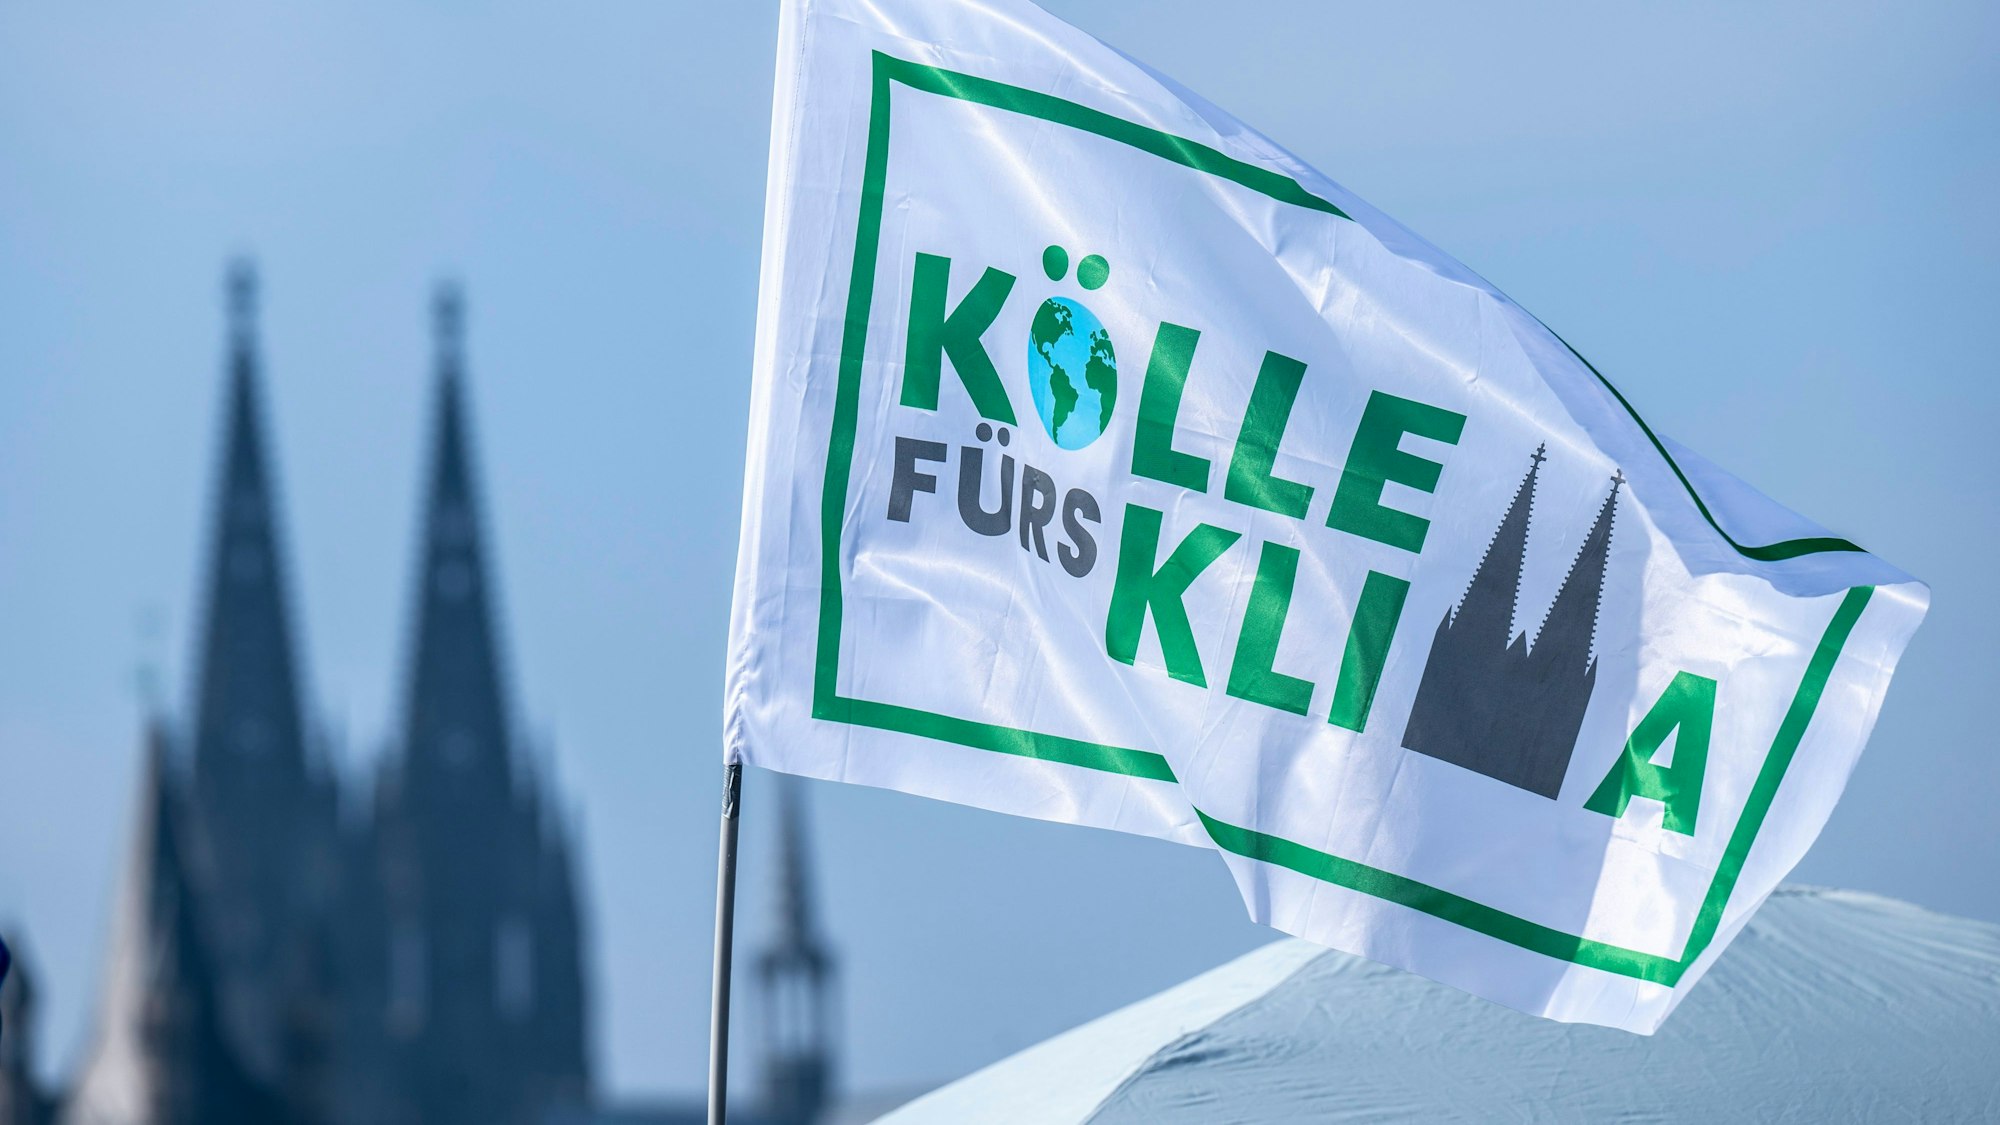 03.03.2023, Köln: Kölle fürs Klima steht auf einer Fahne der Demonstranten. Abschlusskundgebung der Organisation Fridays for Future (Globaler Klimastreik) und Verdi nach einer Demonstration zu Klima- und Verkehrswende. Foto: Uwe Weiser